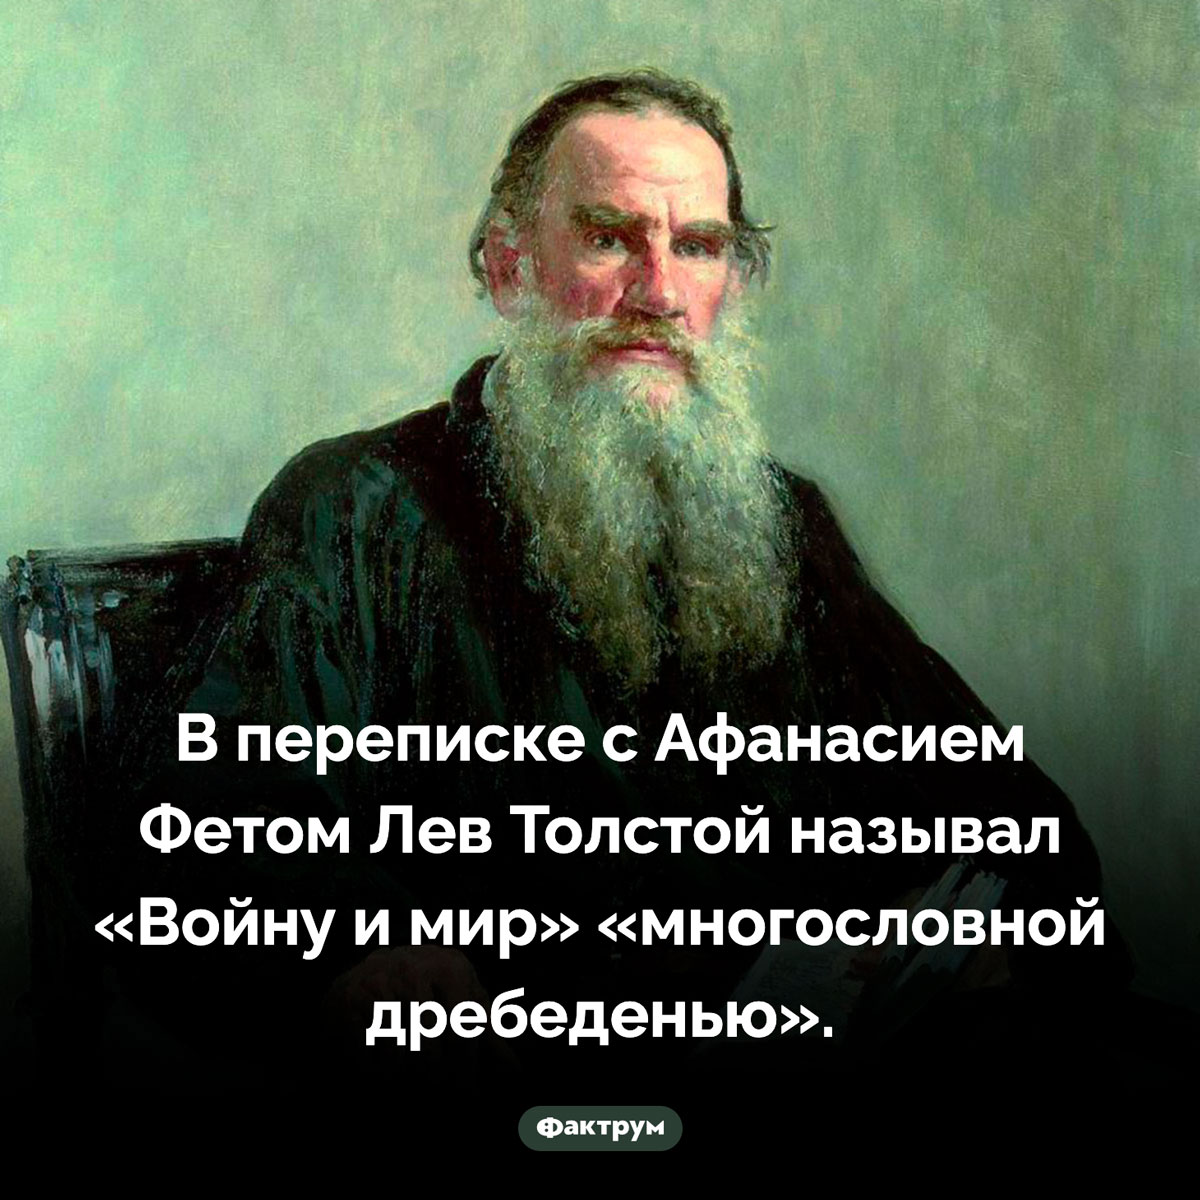 Многословная дребедень Льва Толостого. В переписке с Афанасием Фетом Лев Толстой называл «Войну и мир» «многословной дребеденью».